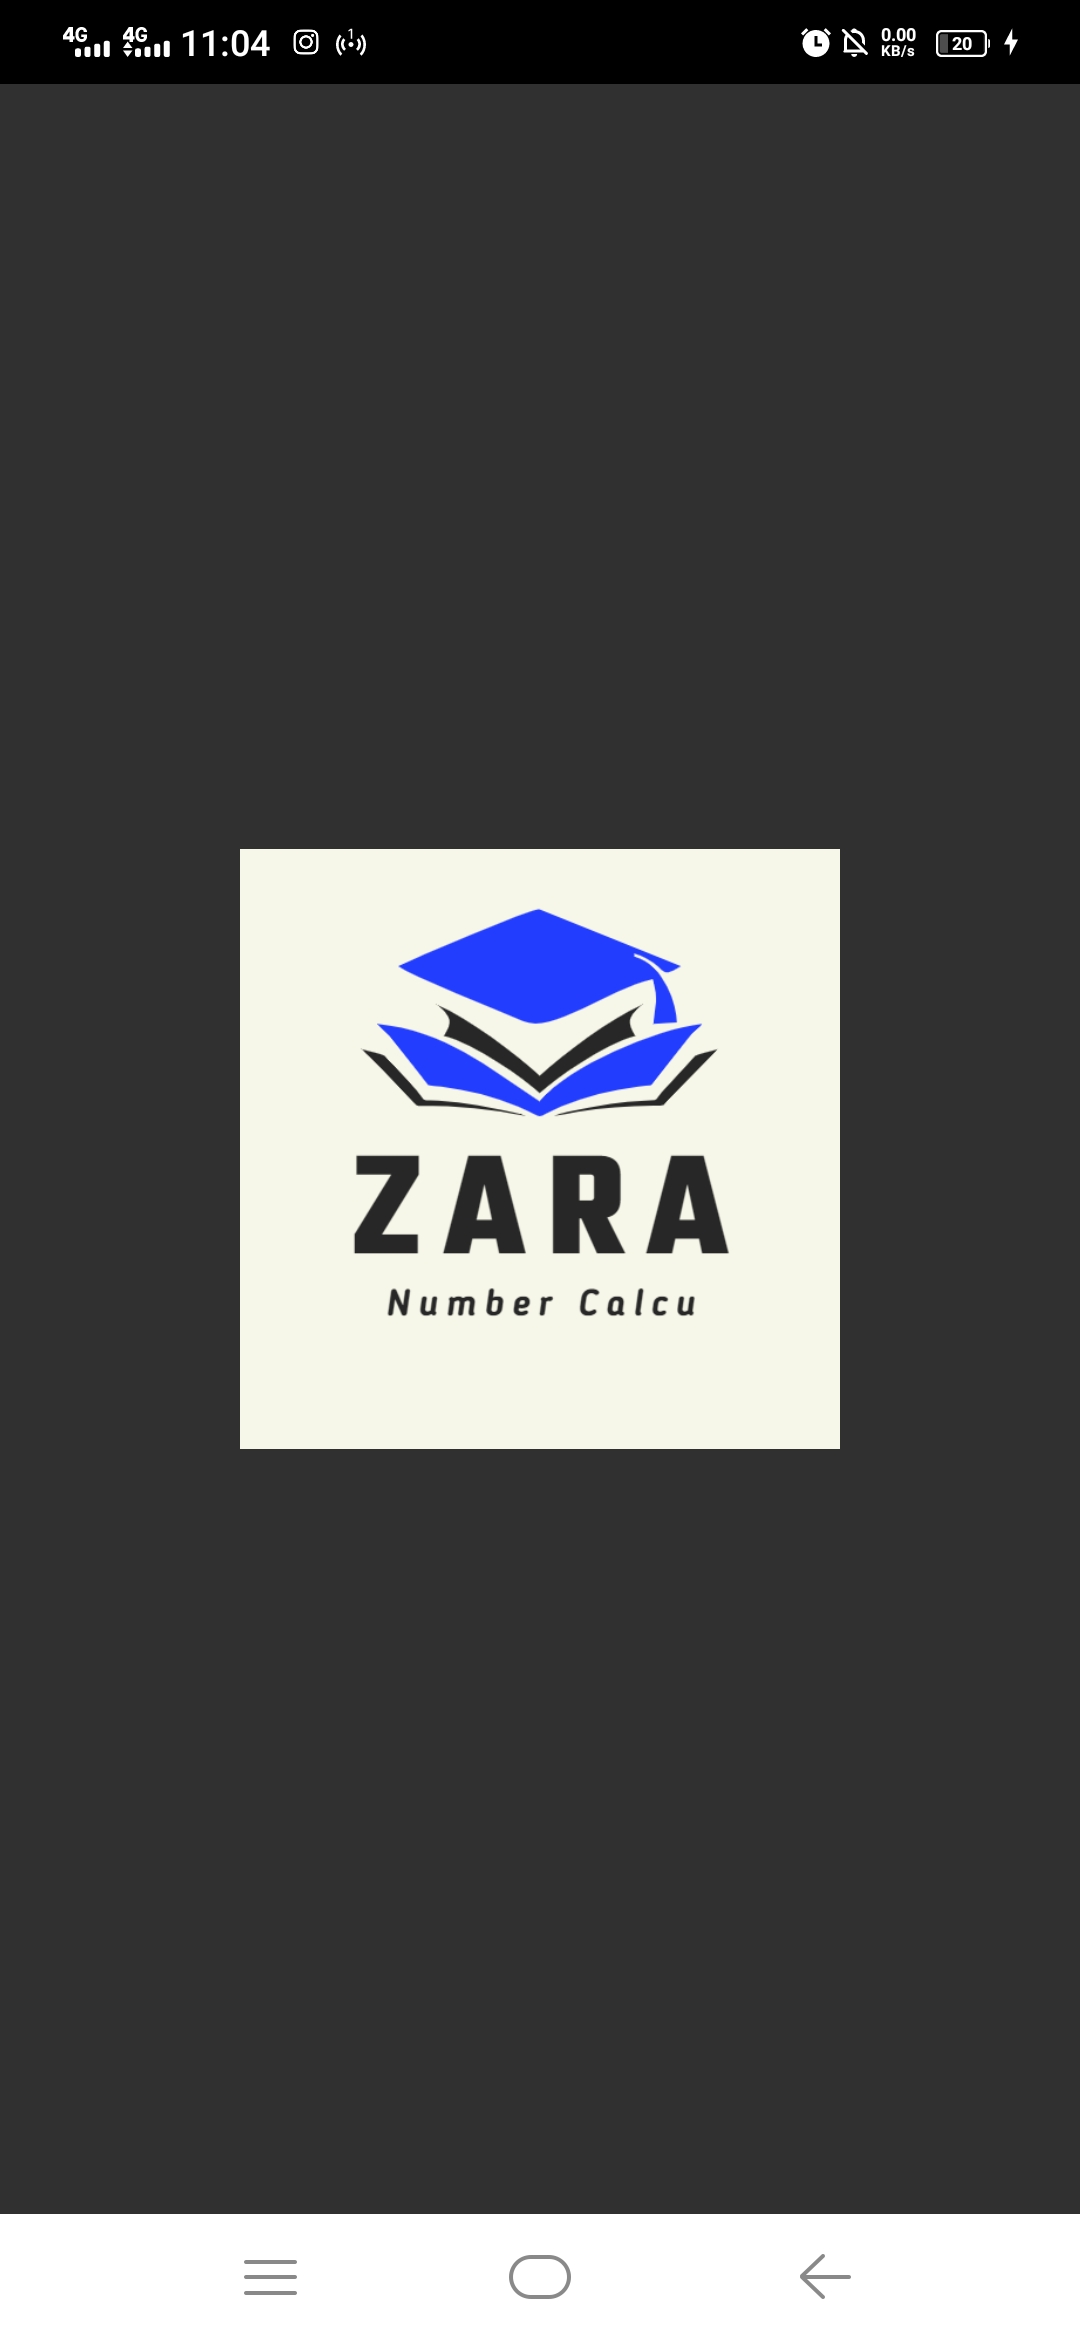 Zara Number Calcu